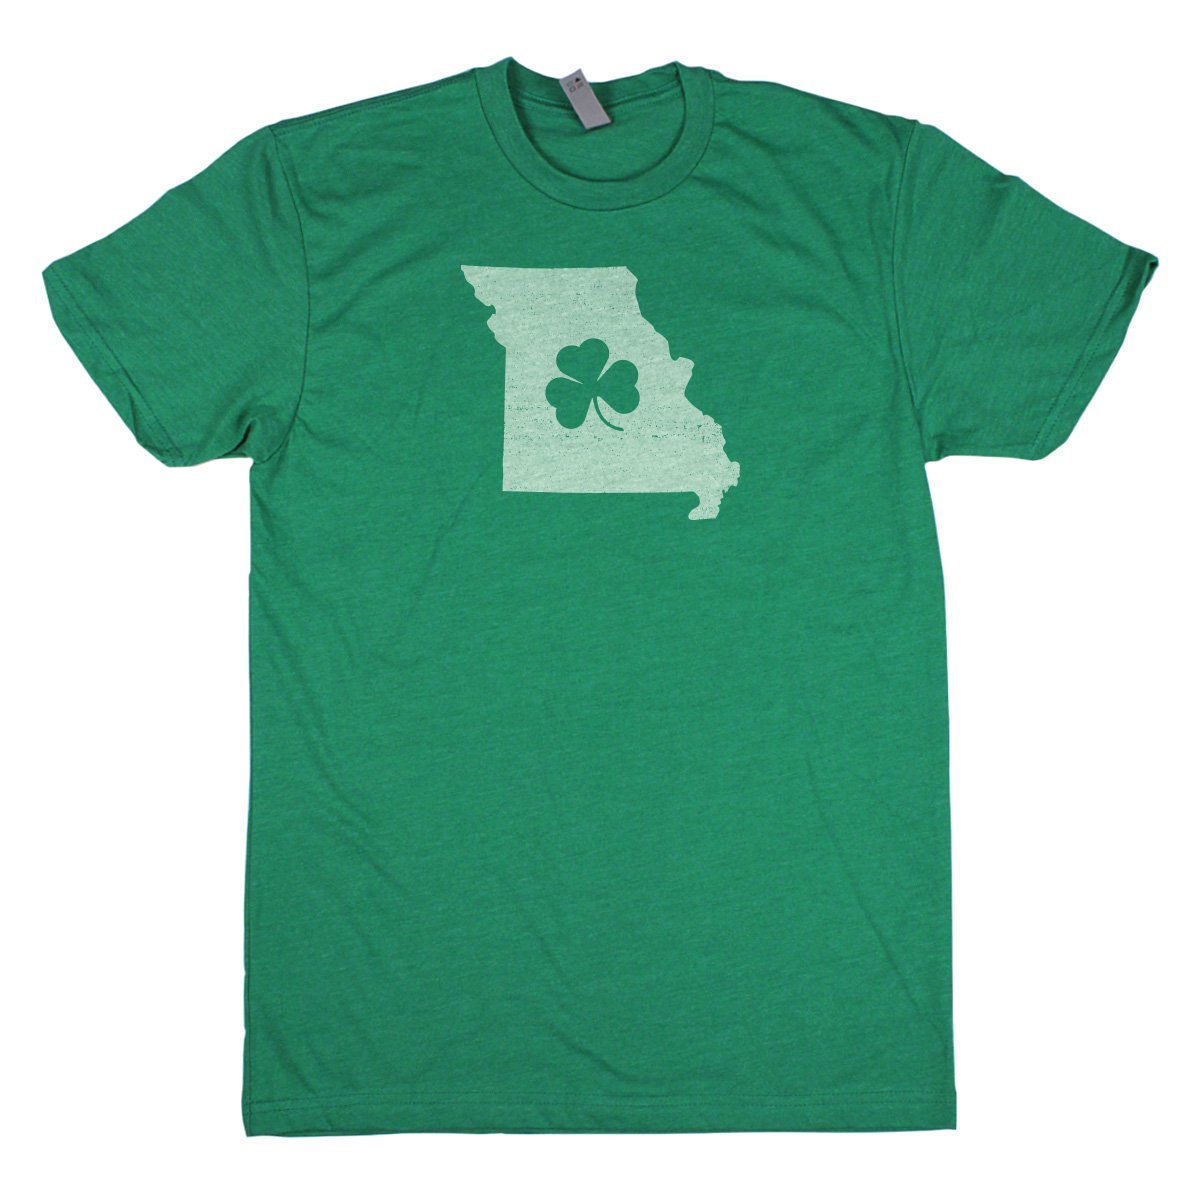 Shamrock Men's Unisex T-Shirt - Ohio